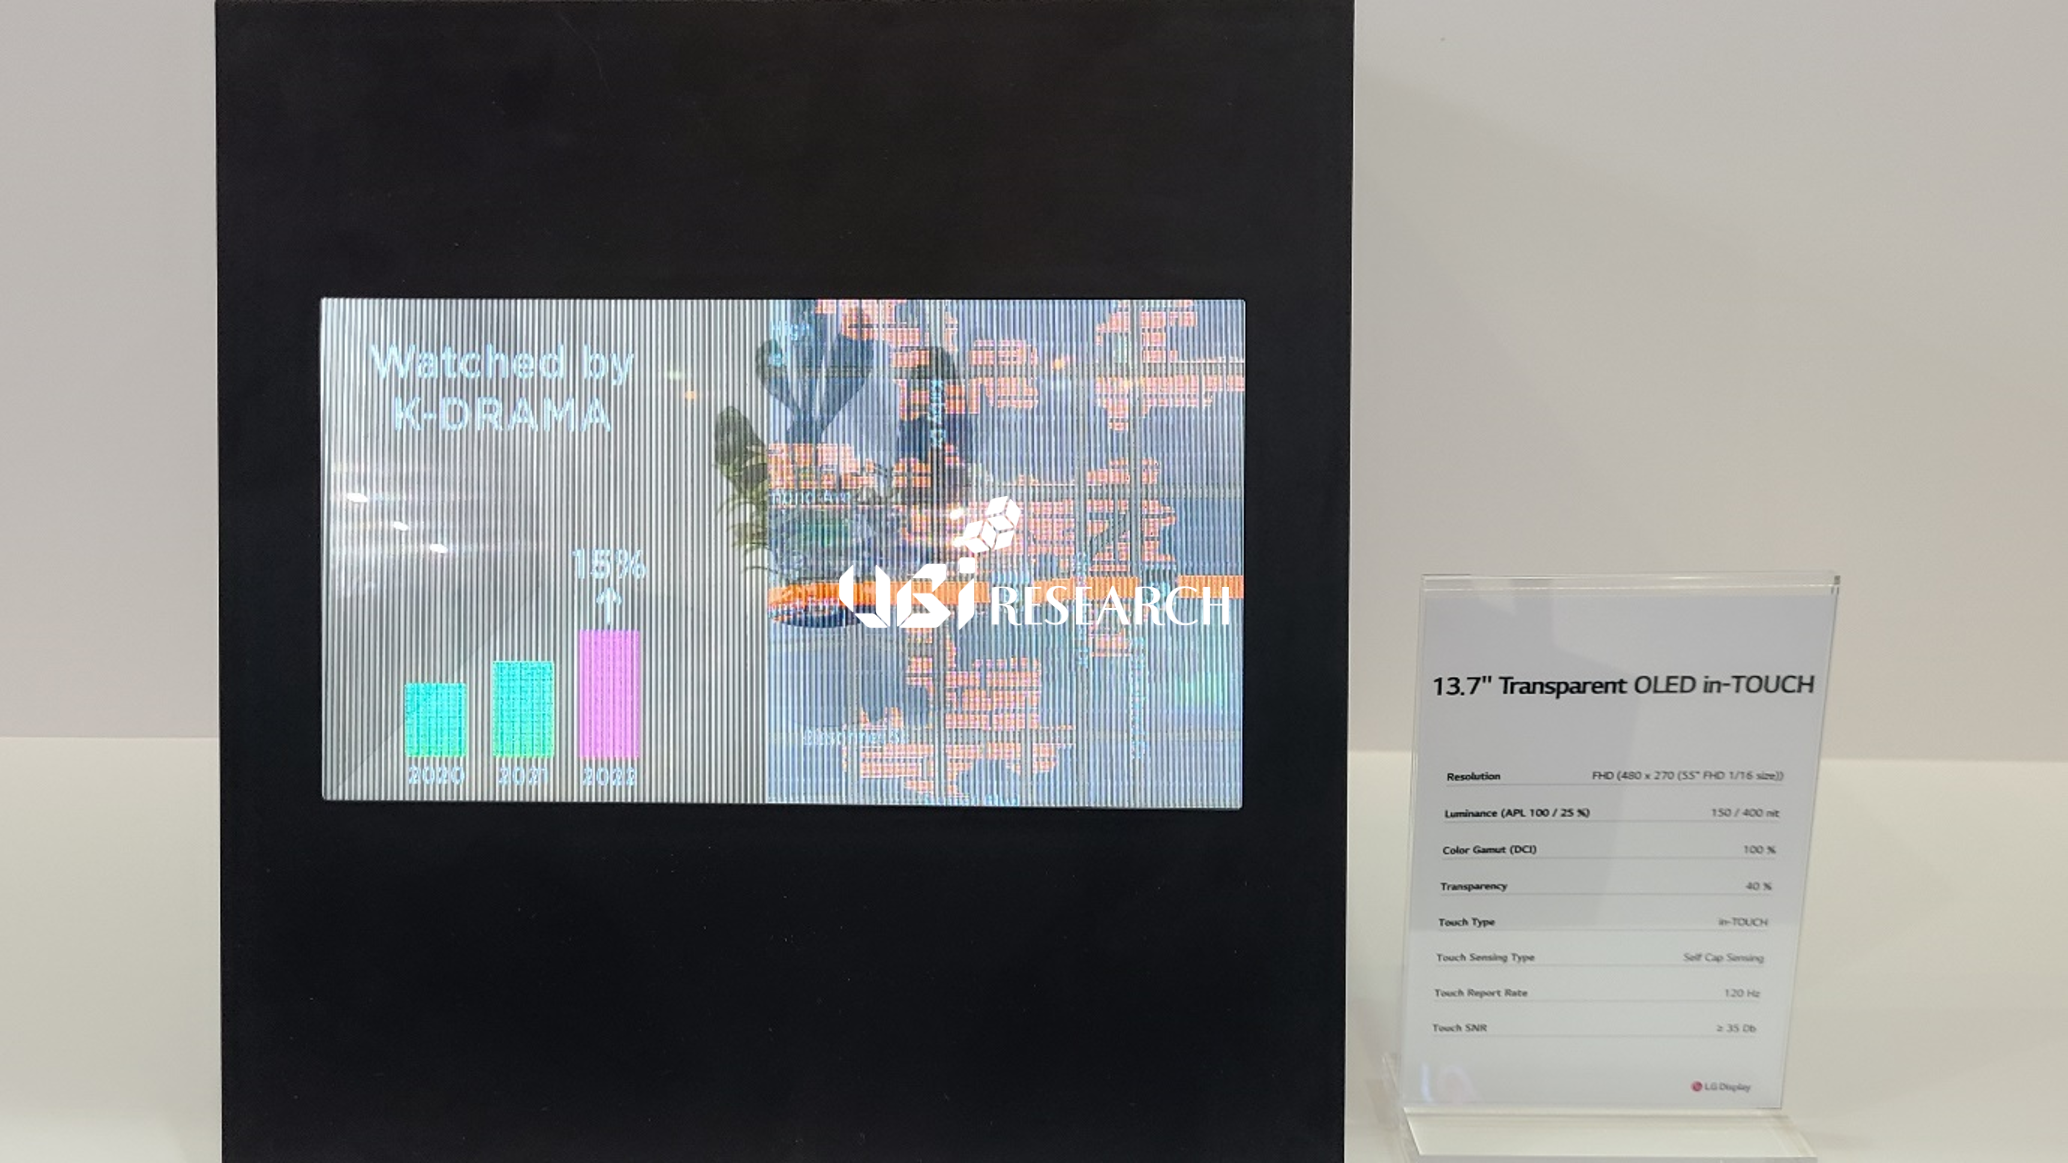 인셀 터치 방식이 적용된 LG 디스플레이의 13.7인치 투명 OLED